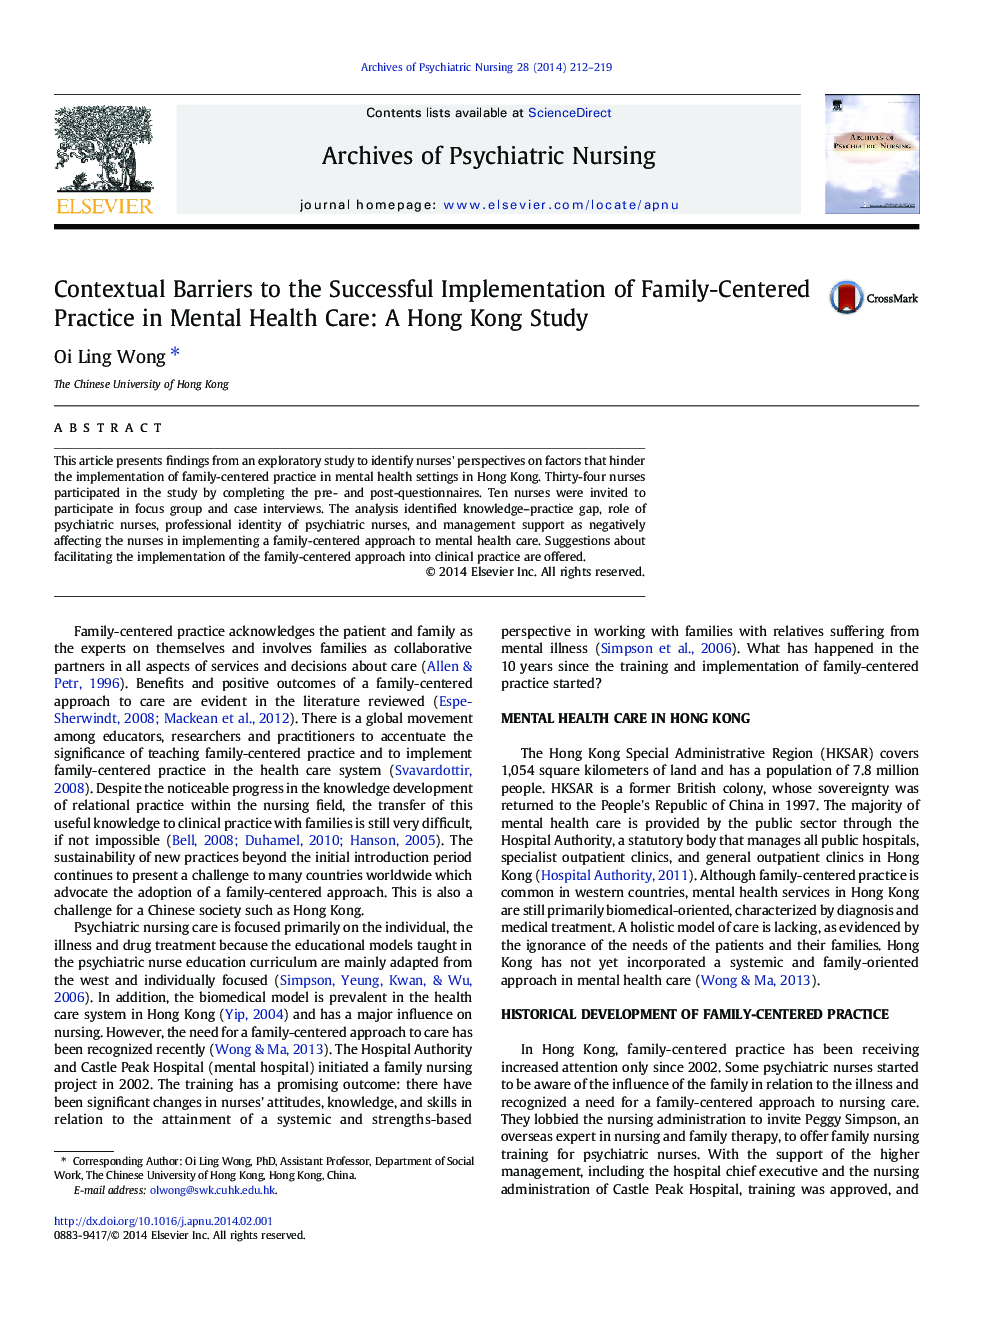 موانع مضر برای اجرای موفقیت آمیز تمرین خانوادگی در مراقبت های بهداشت روان: مطالعه در هنگ کنگ 